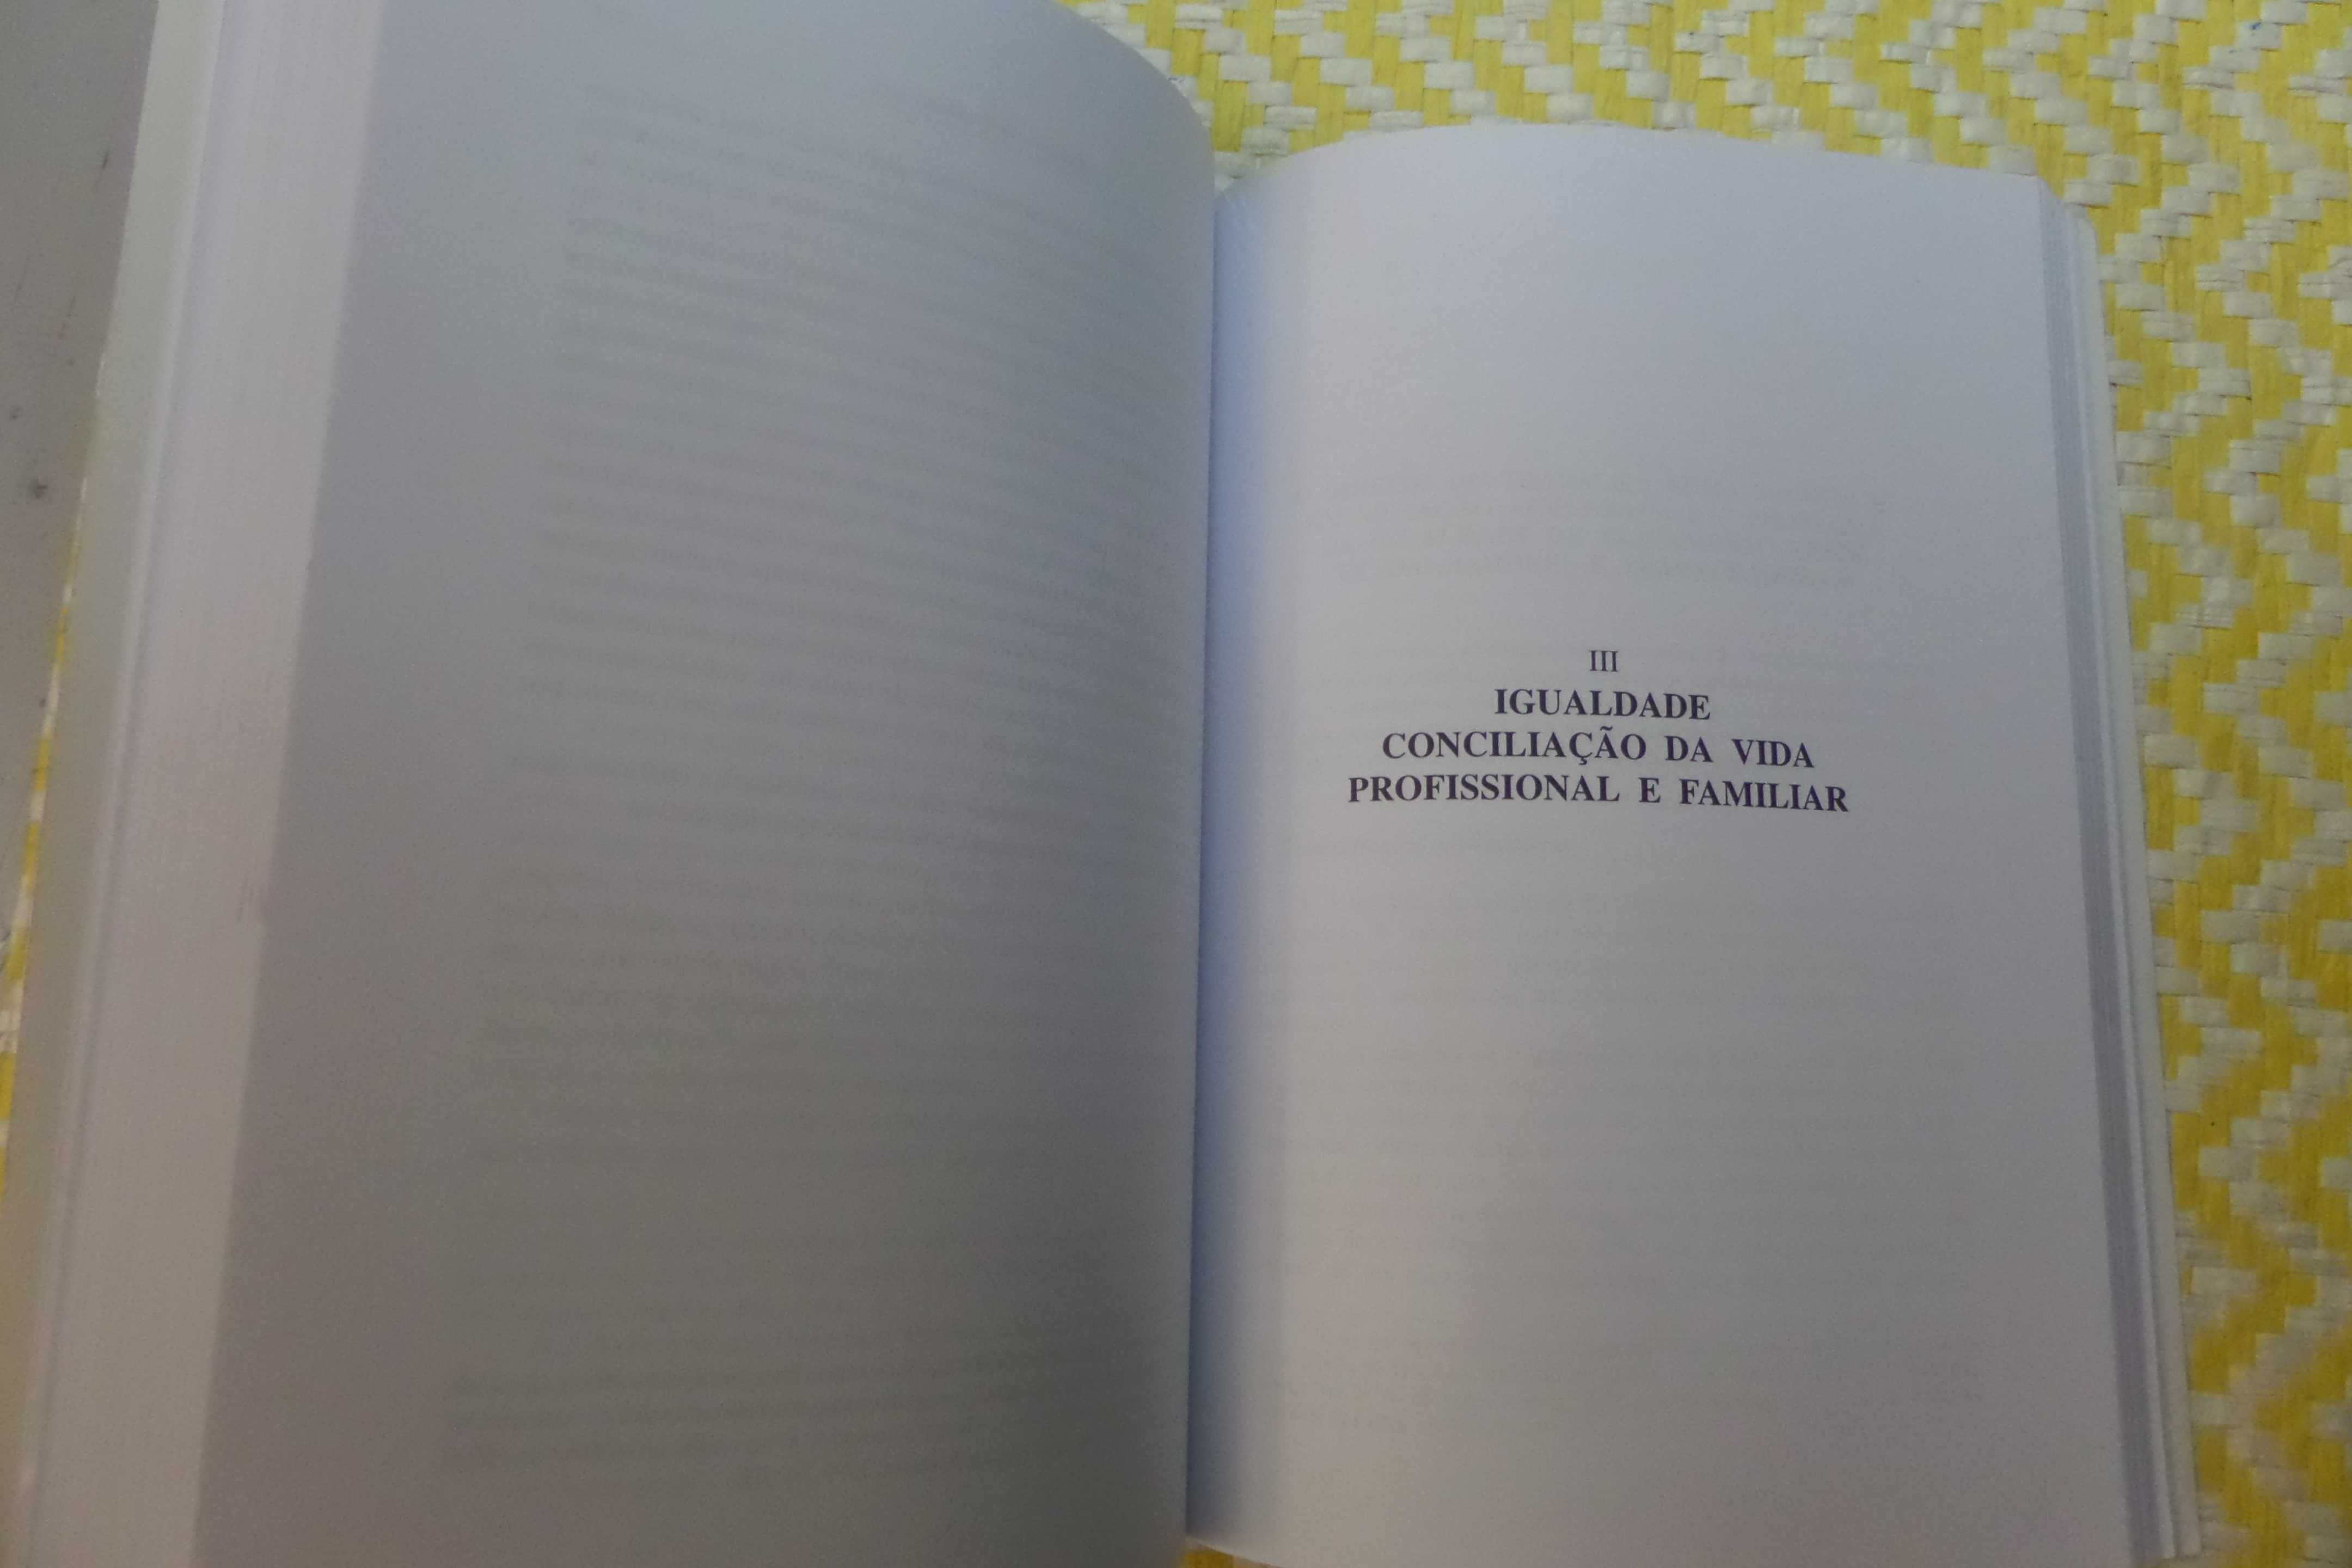 Estudos de Direito do Trabalho Vol. I  
Maria do R. Palma Ramalho